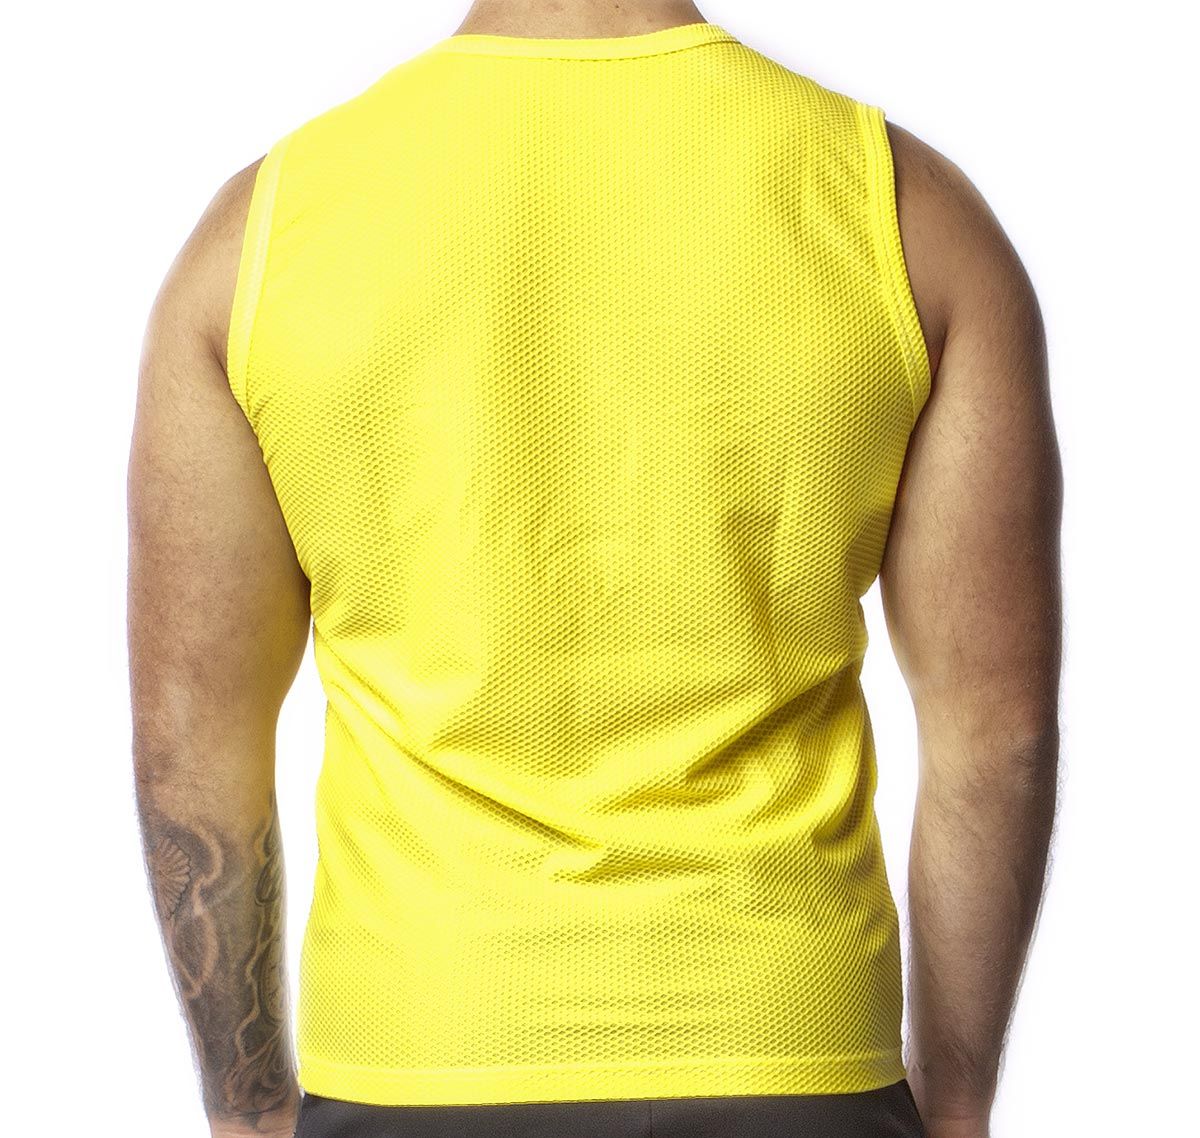 Alexander COBB Camiseta de tirantes TANK TOP MESH YELLOW, jaune